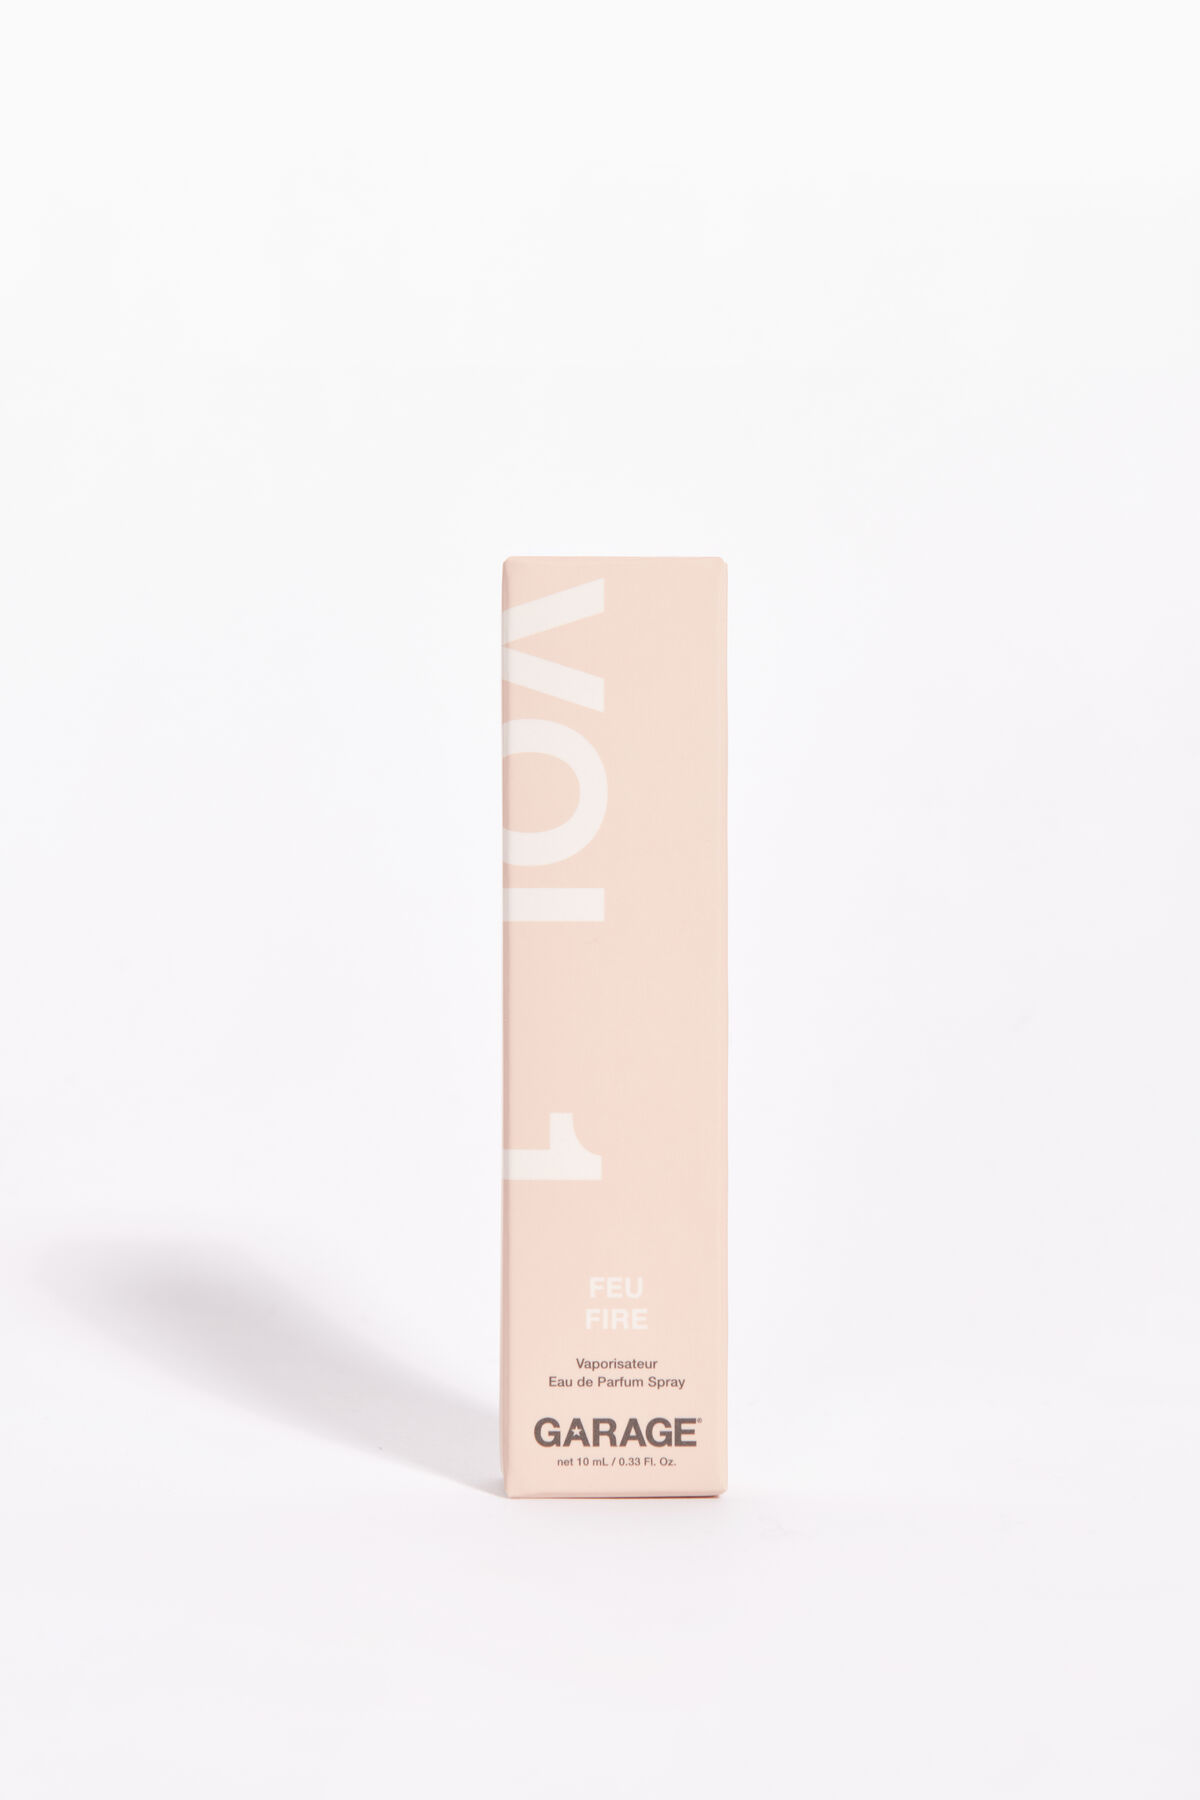 Garage Vol. 1: Fire - Fragrance by Garage. 4